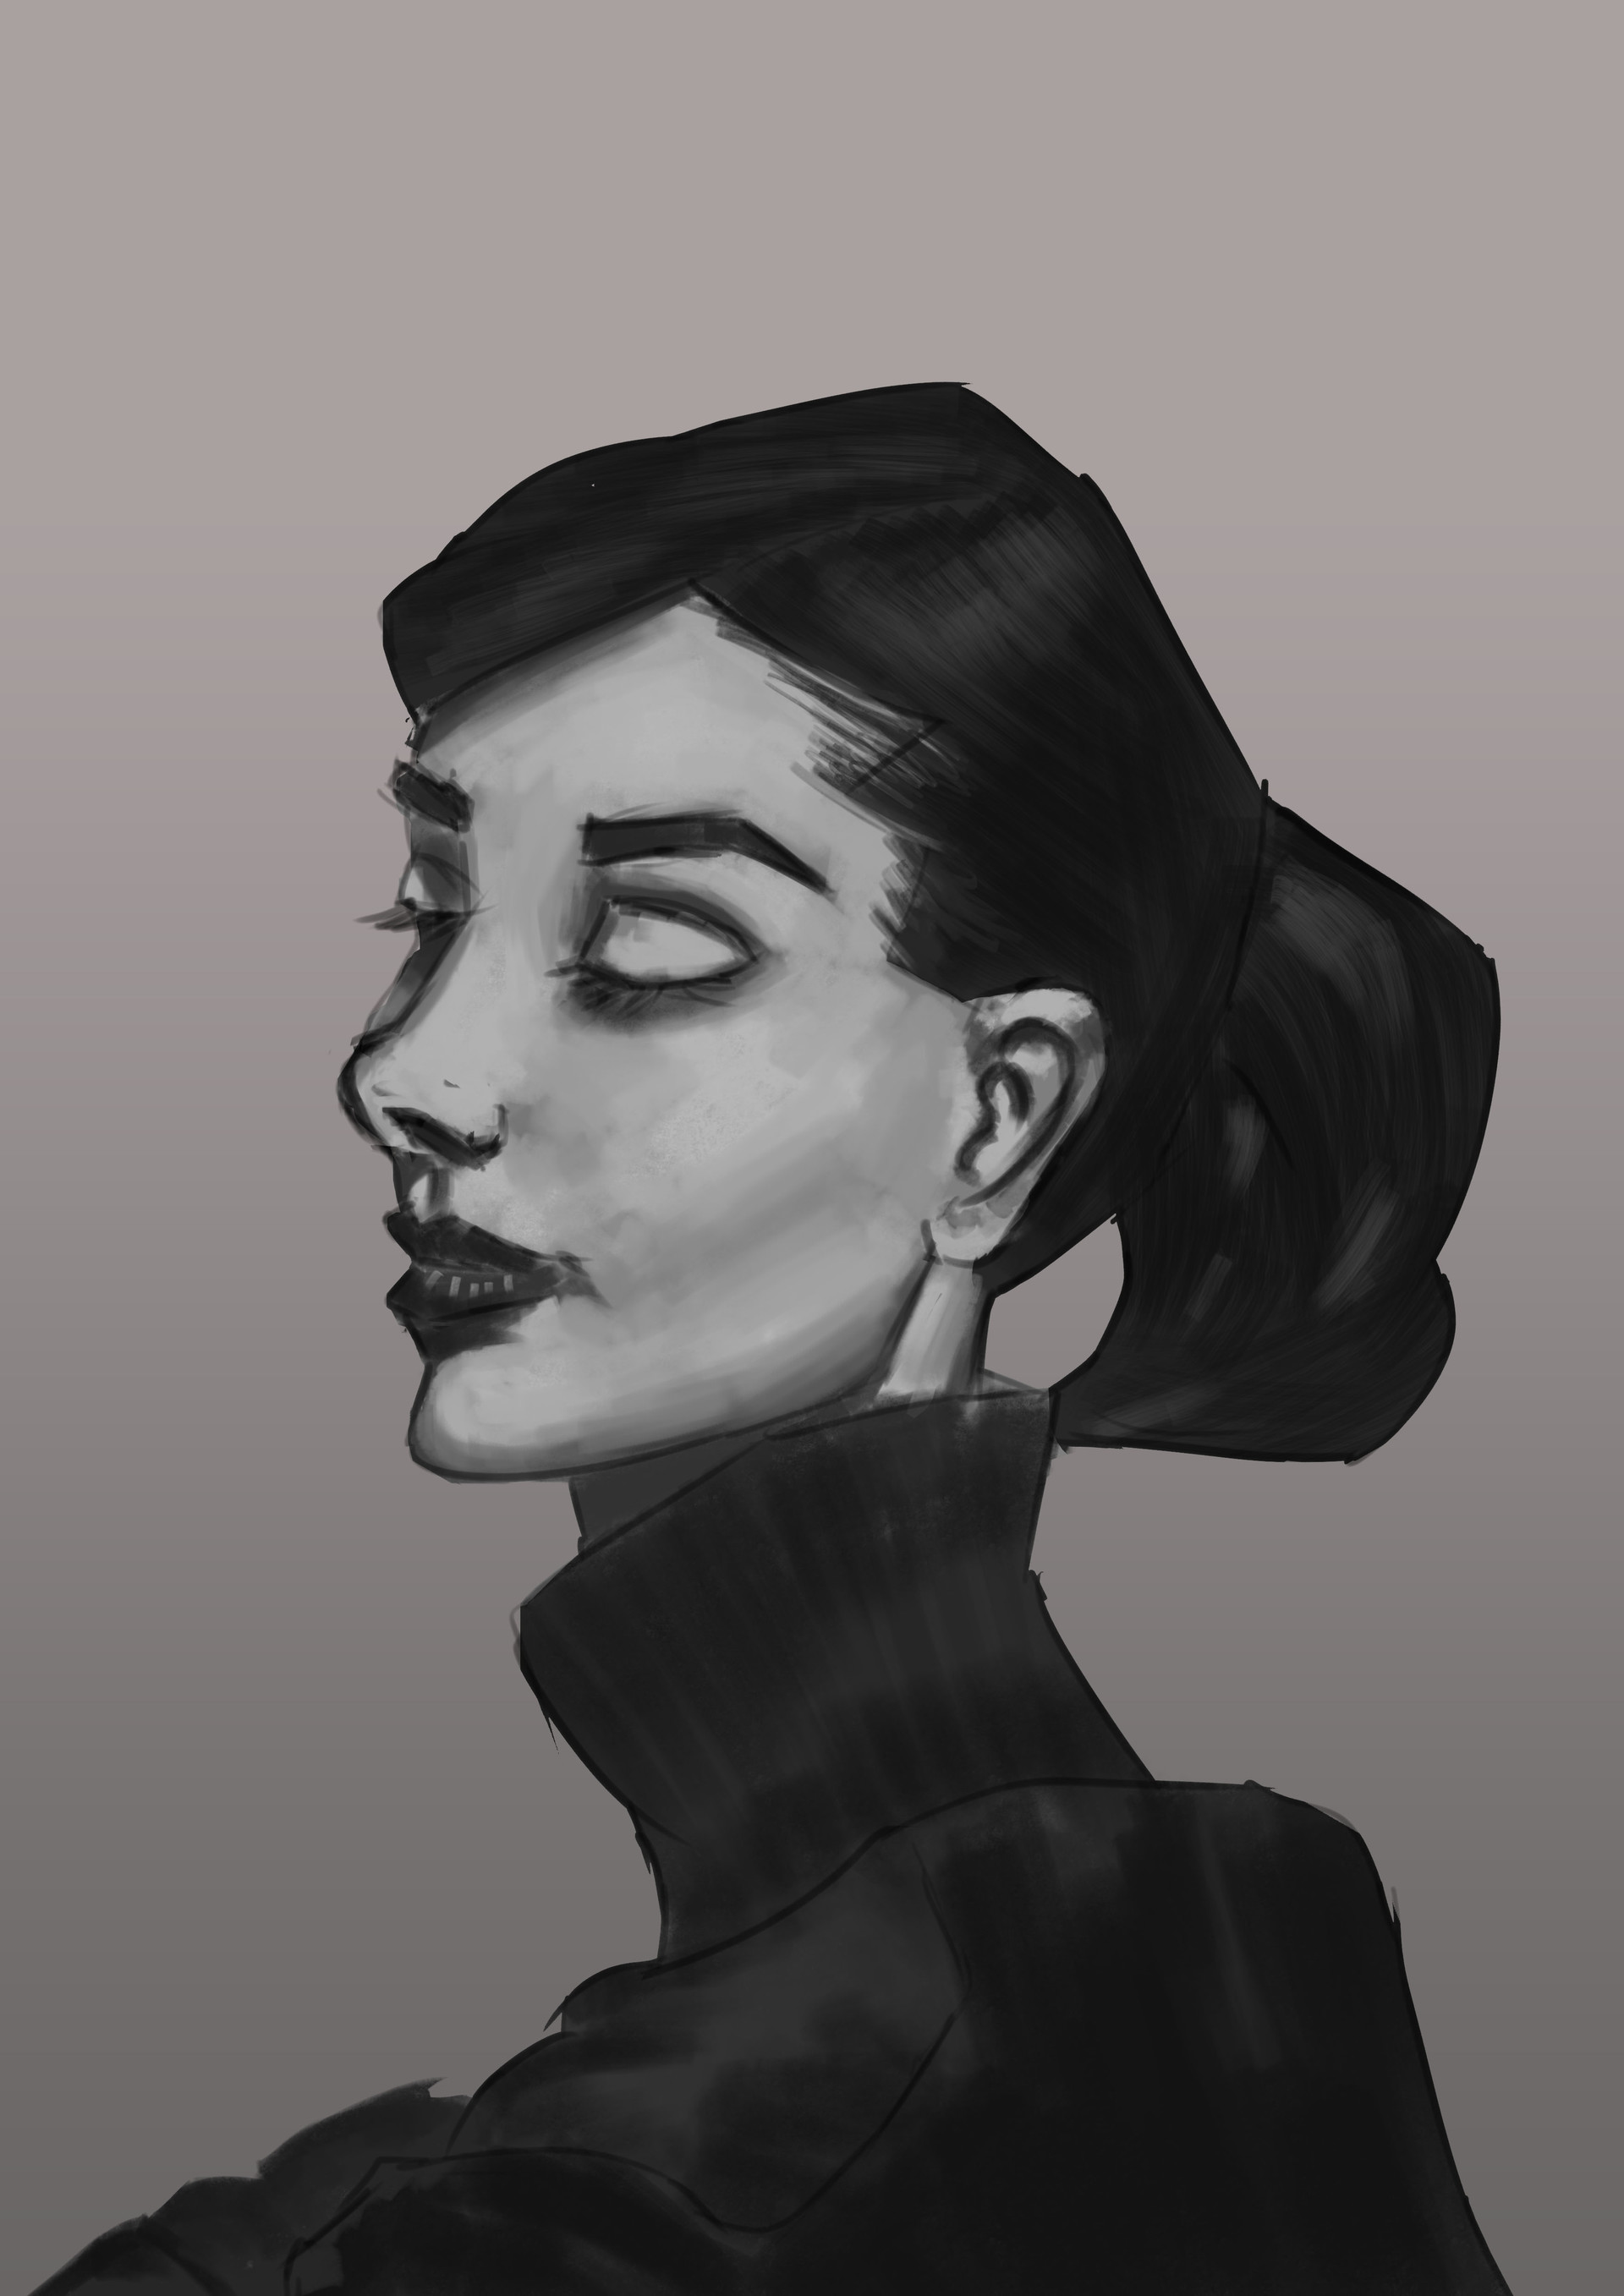 ArtStation - B&W Portrait of Audrey Hepburn